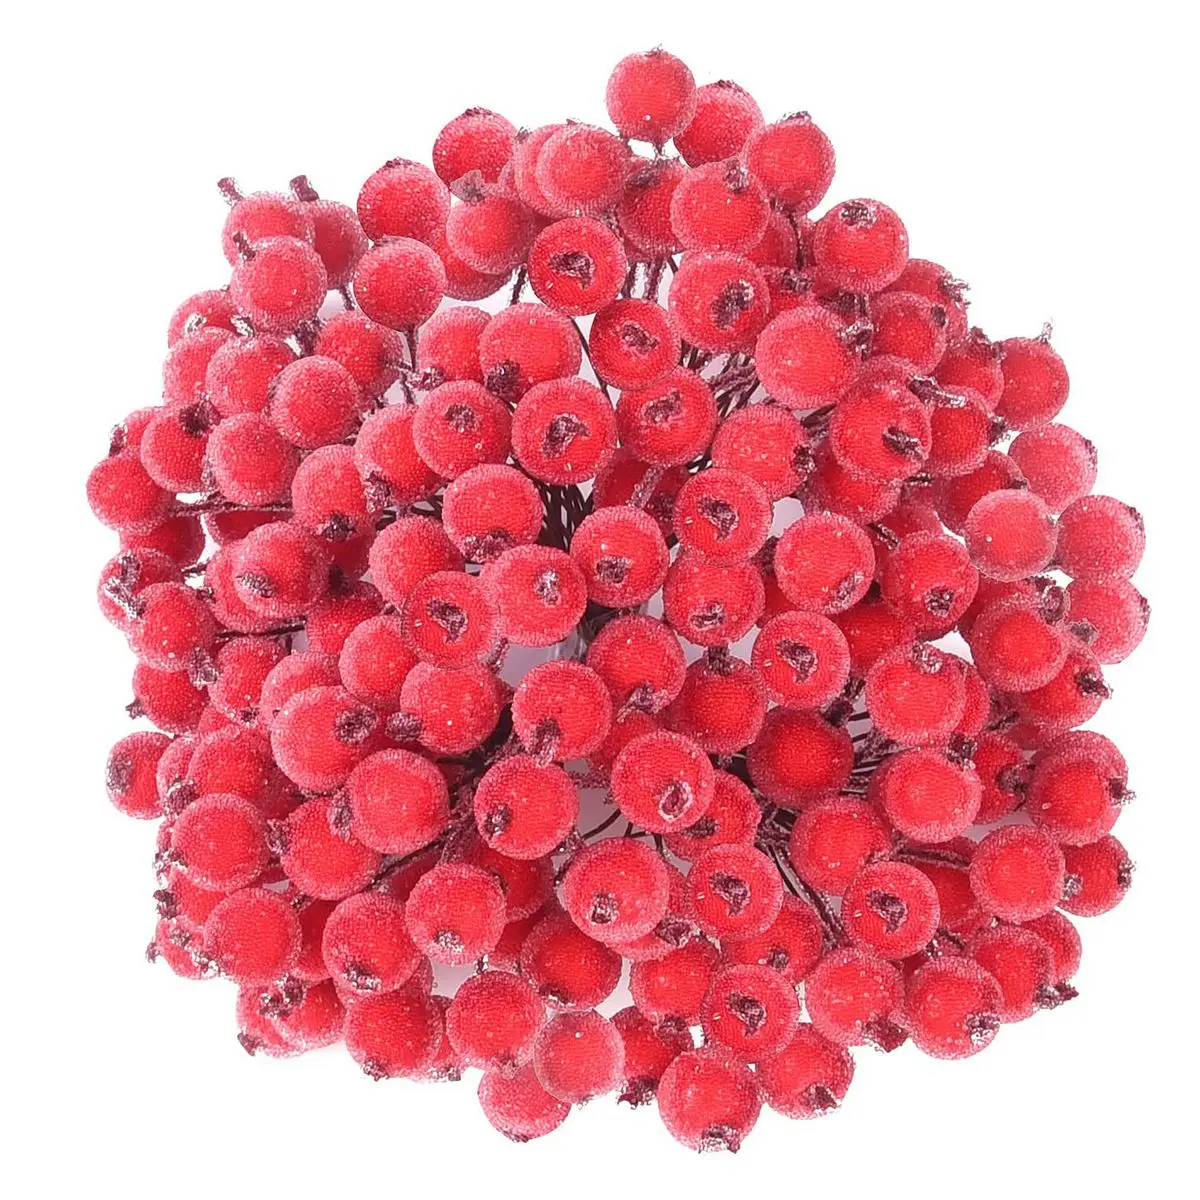 

320 искусственные матовые красные ягоды Падуба, Рождественские Мини-фрукты, ягоды, цветы для рождественской елки, украшение, изготовление гирлянды